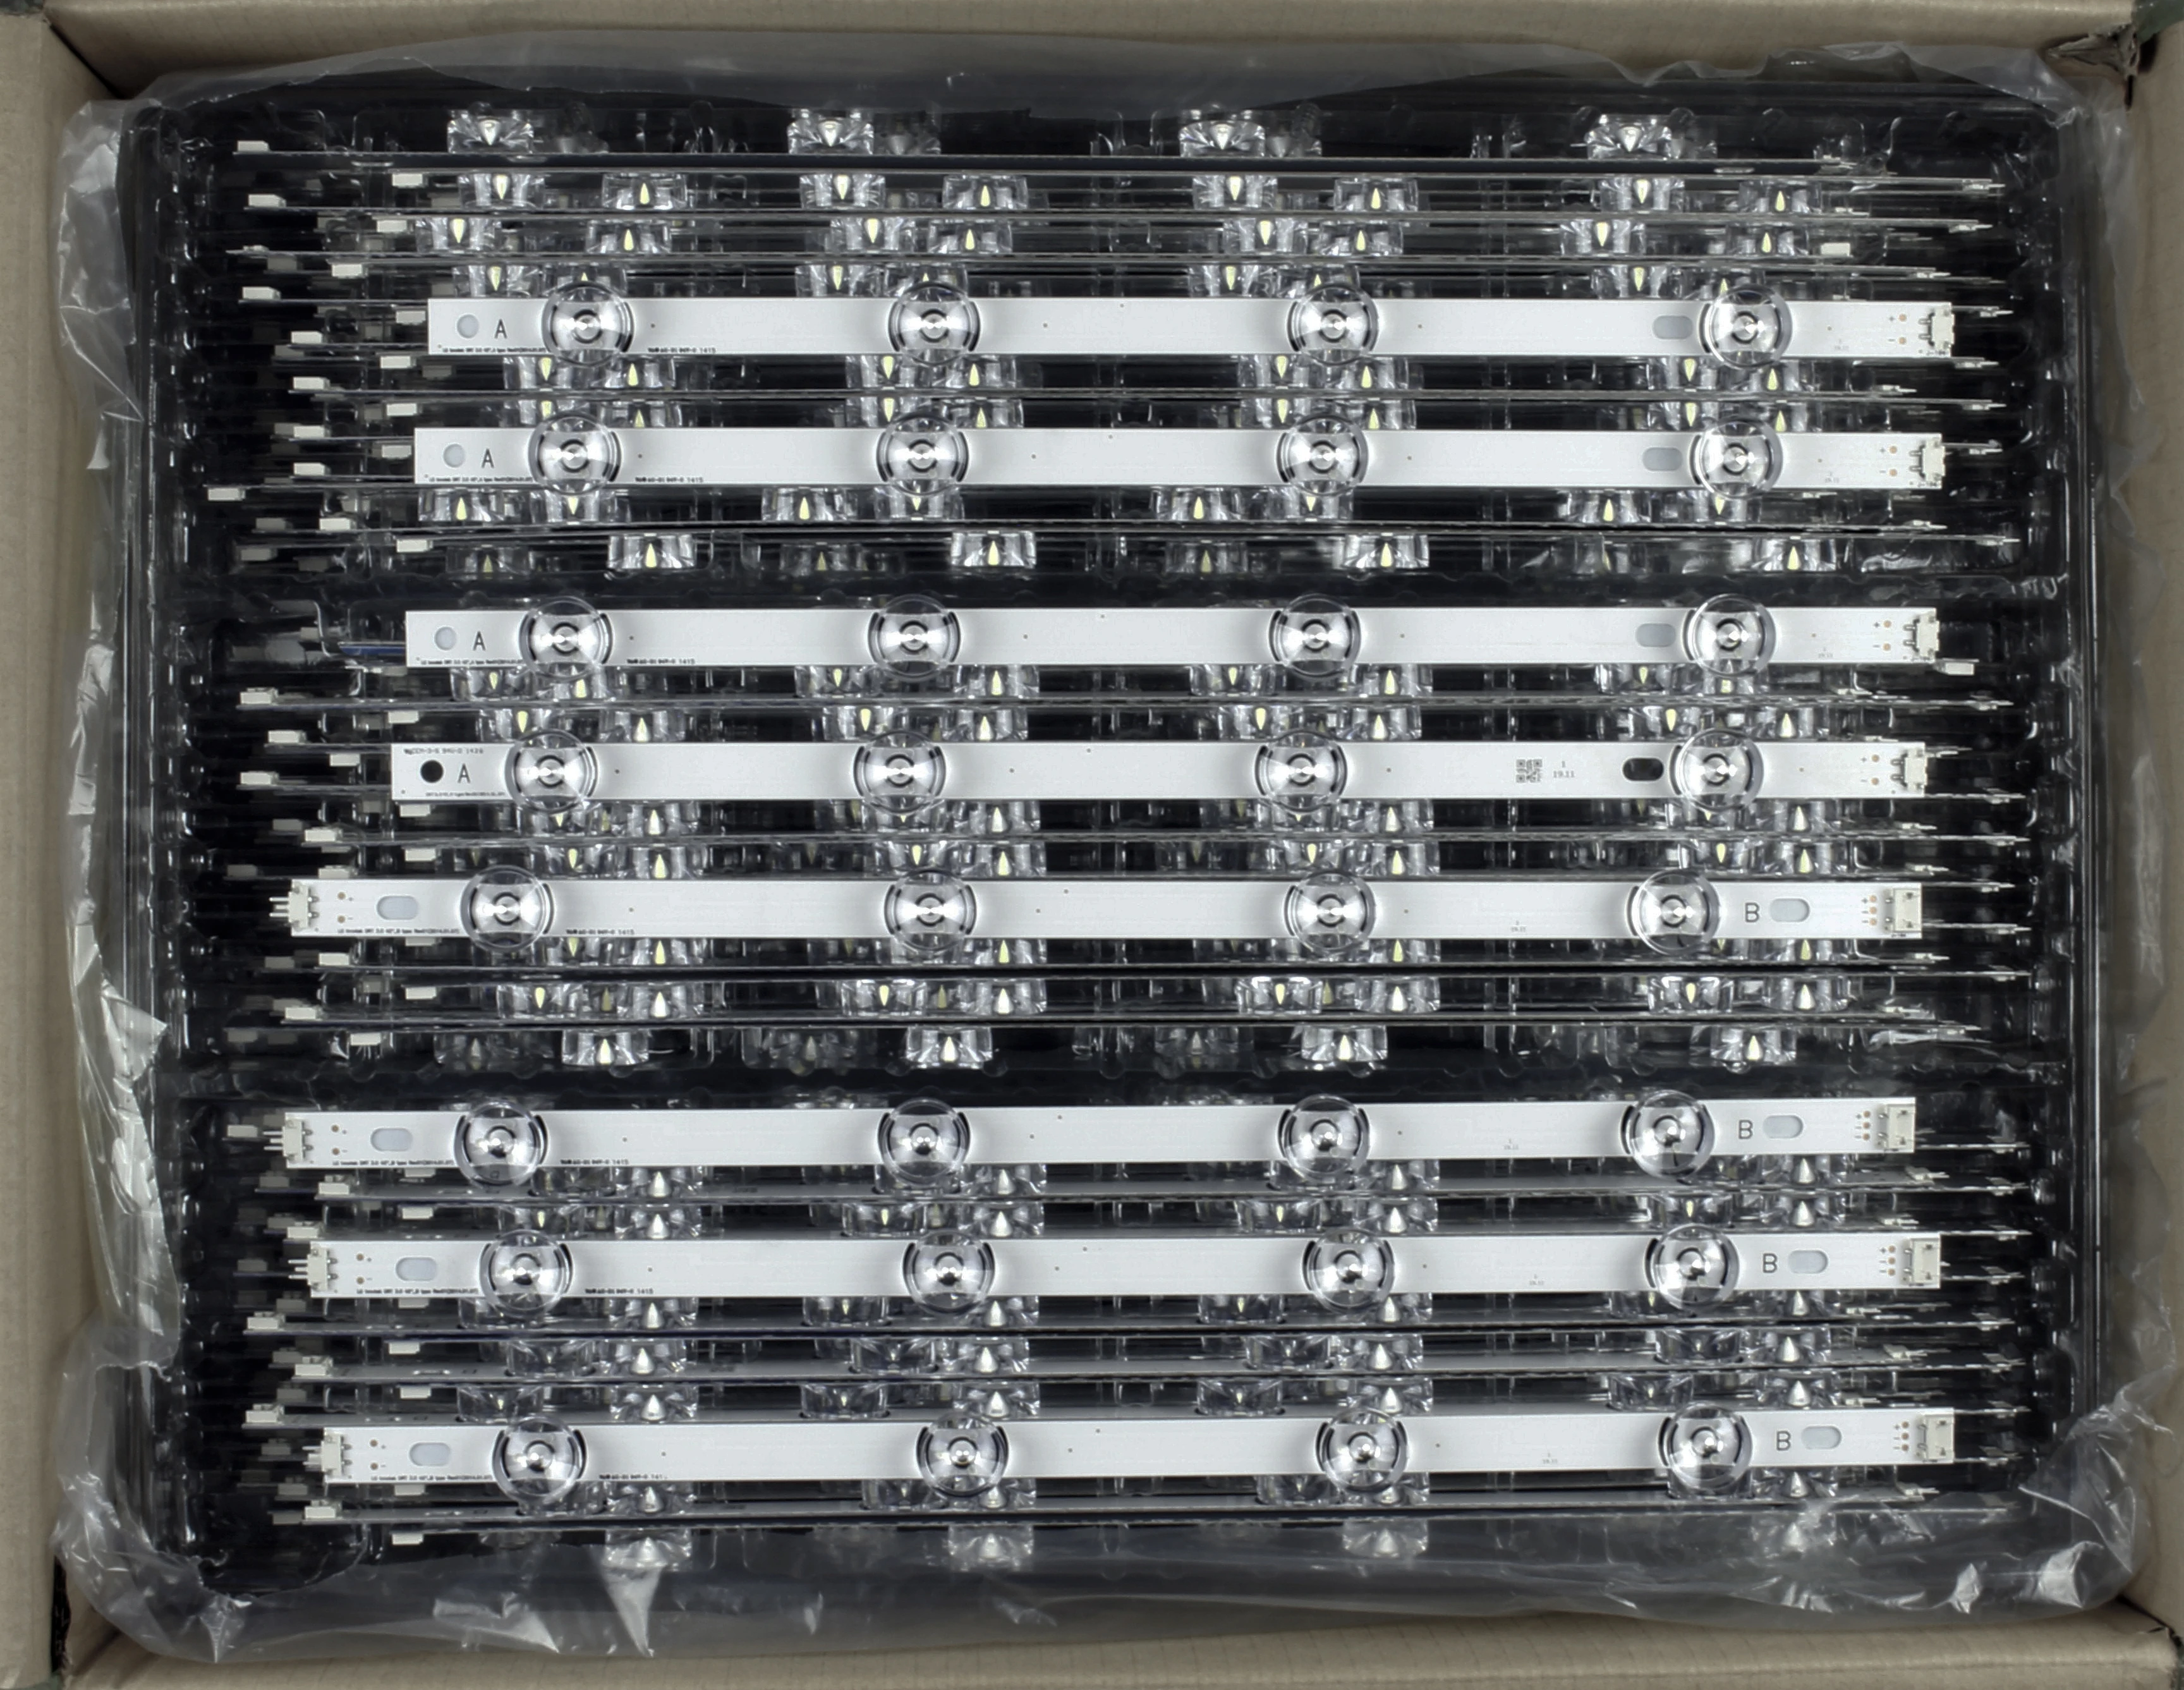 LED подсветка INNOTEK DRT 3.0, лента с 8 светодиодами для телевизора LG 42 дюйма, 6916L,1709B, 1710B, 1957E, 1956E, 6916L-1956A, 6916L-1957A, 42LB561v от AliExpress WW